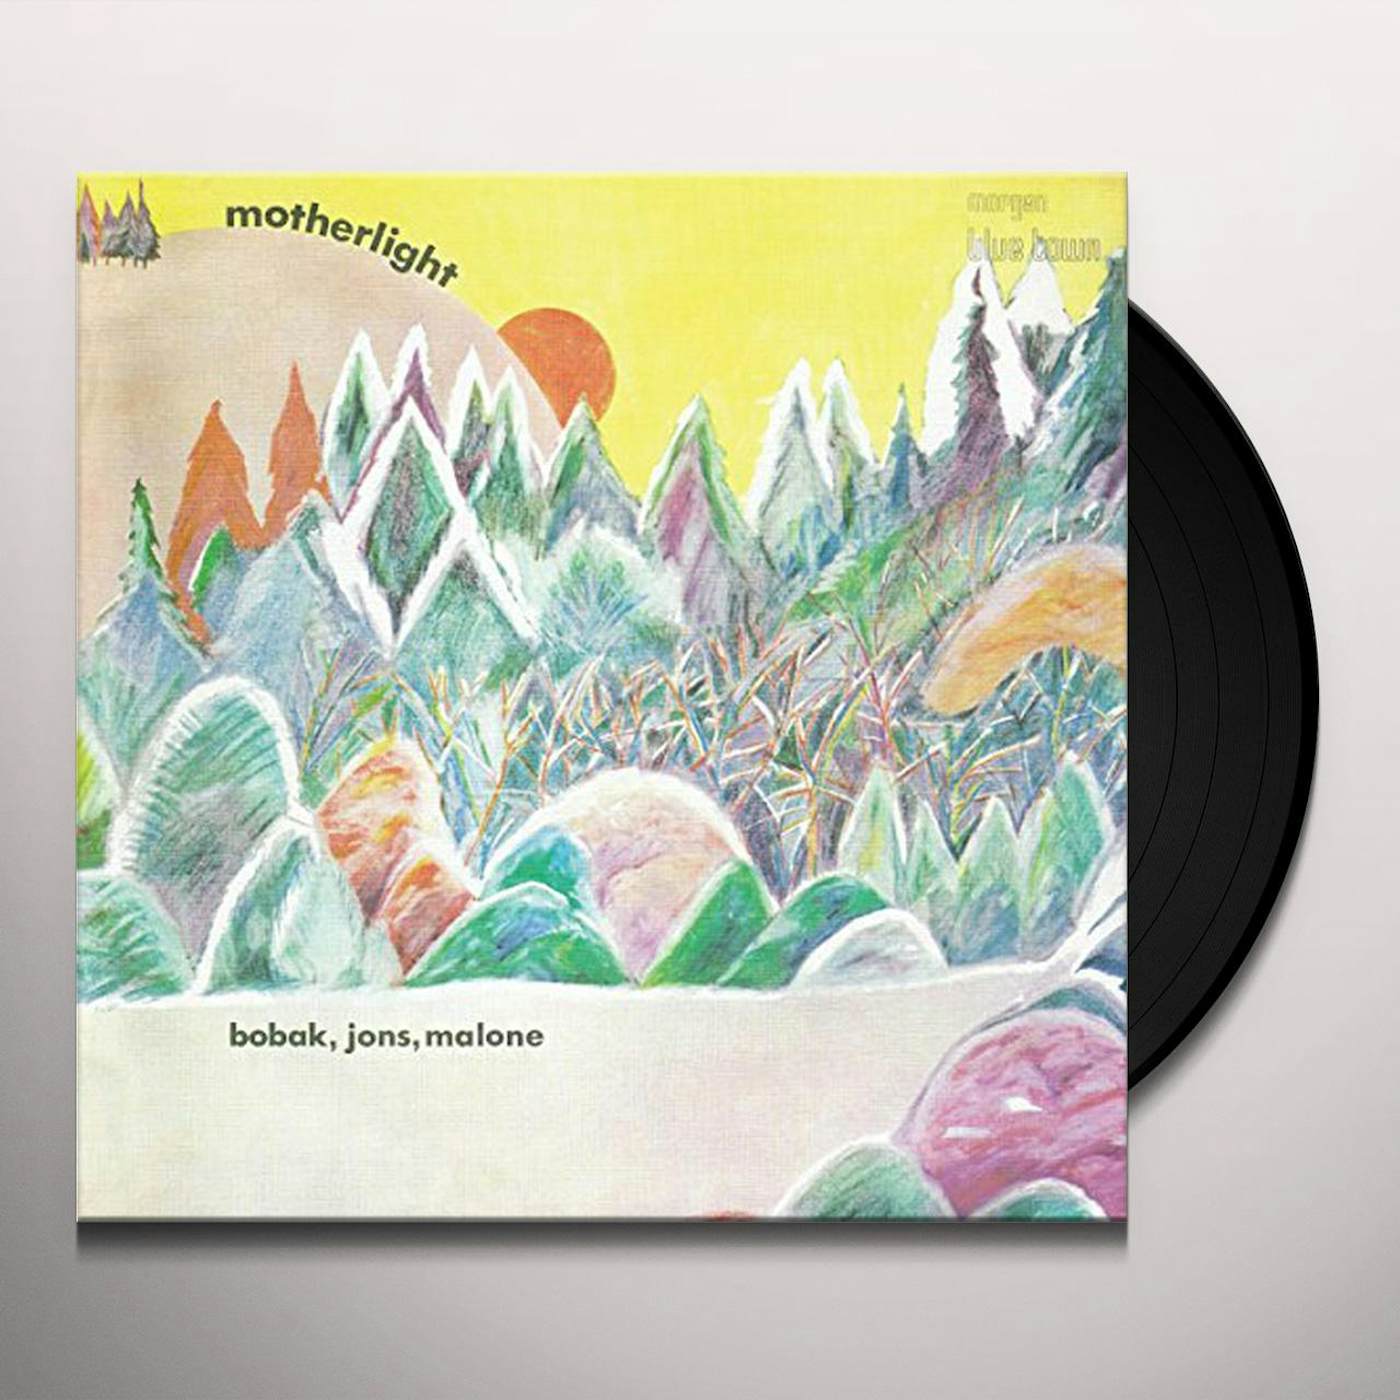 Bunny Berigan Motherlight Vinyl Record